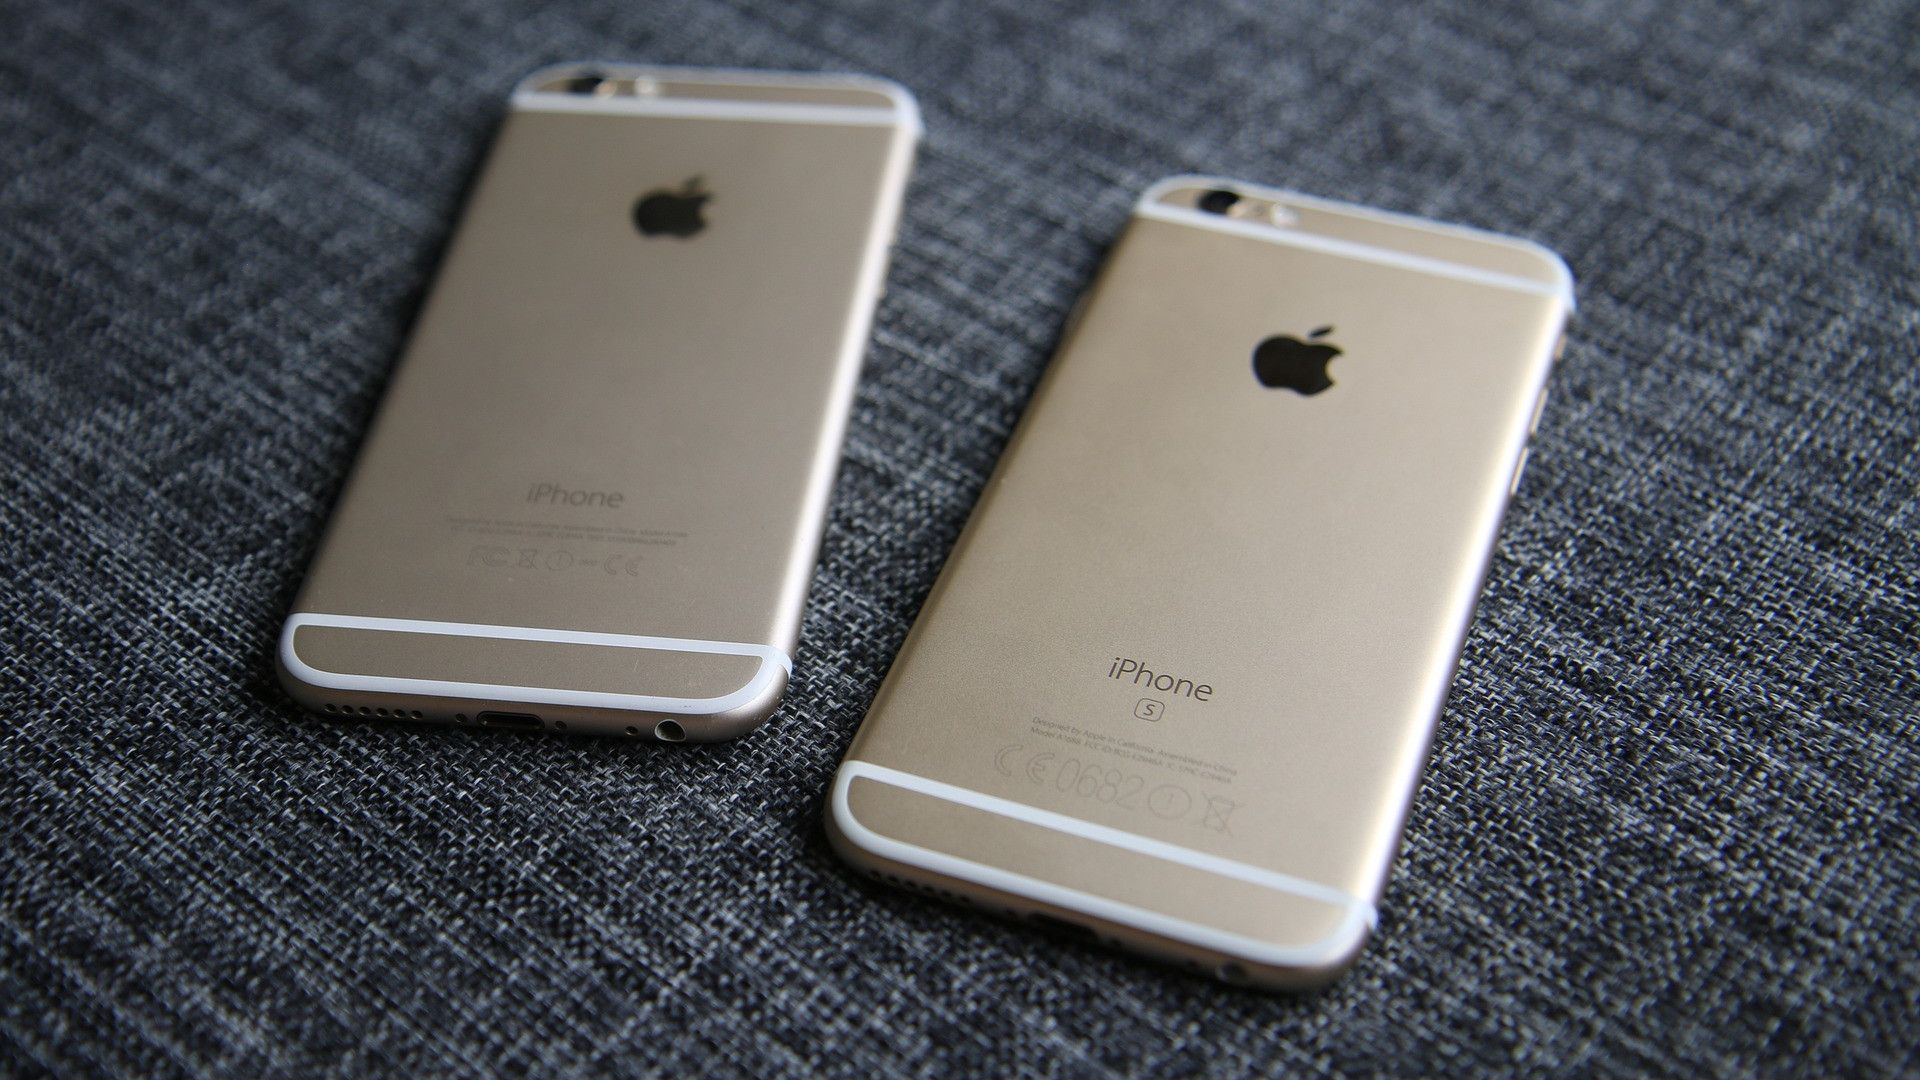 telefones apple iphone 6 e 6s cor dourada virados para baixo na superfície do tecido